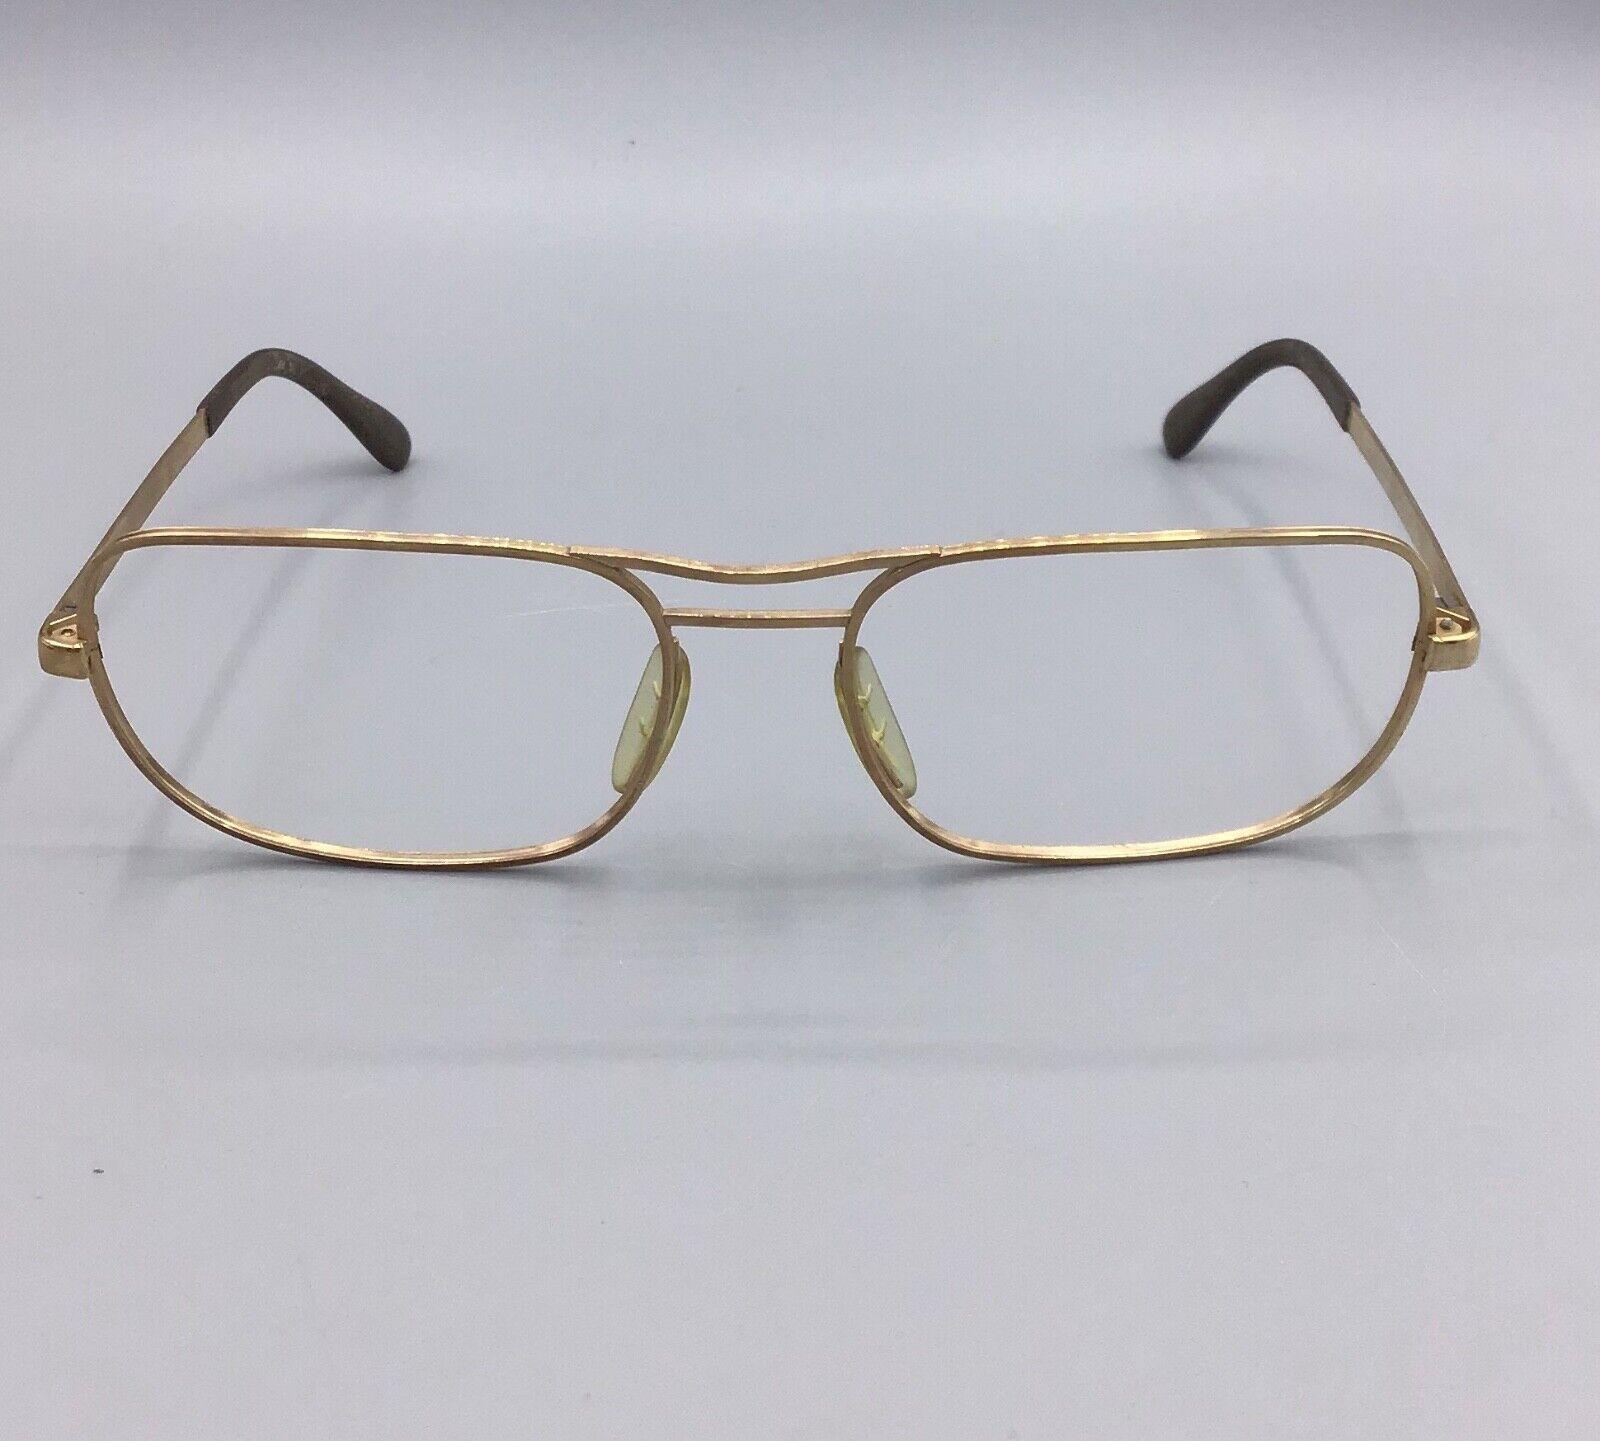 Marwitz occhiale vintage eyewear brillen lunettes 18 m/m gold laminated 60s